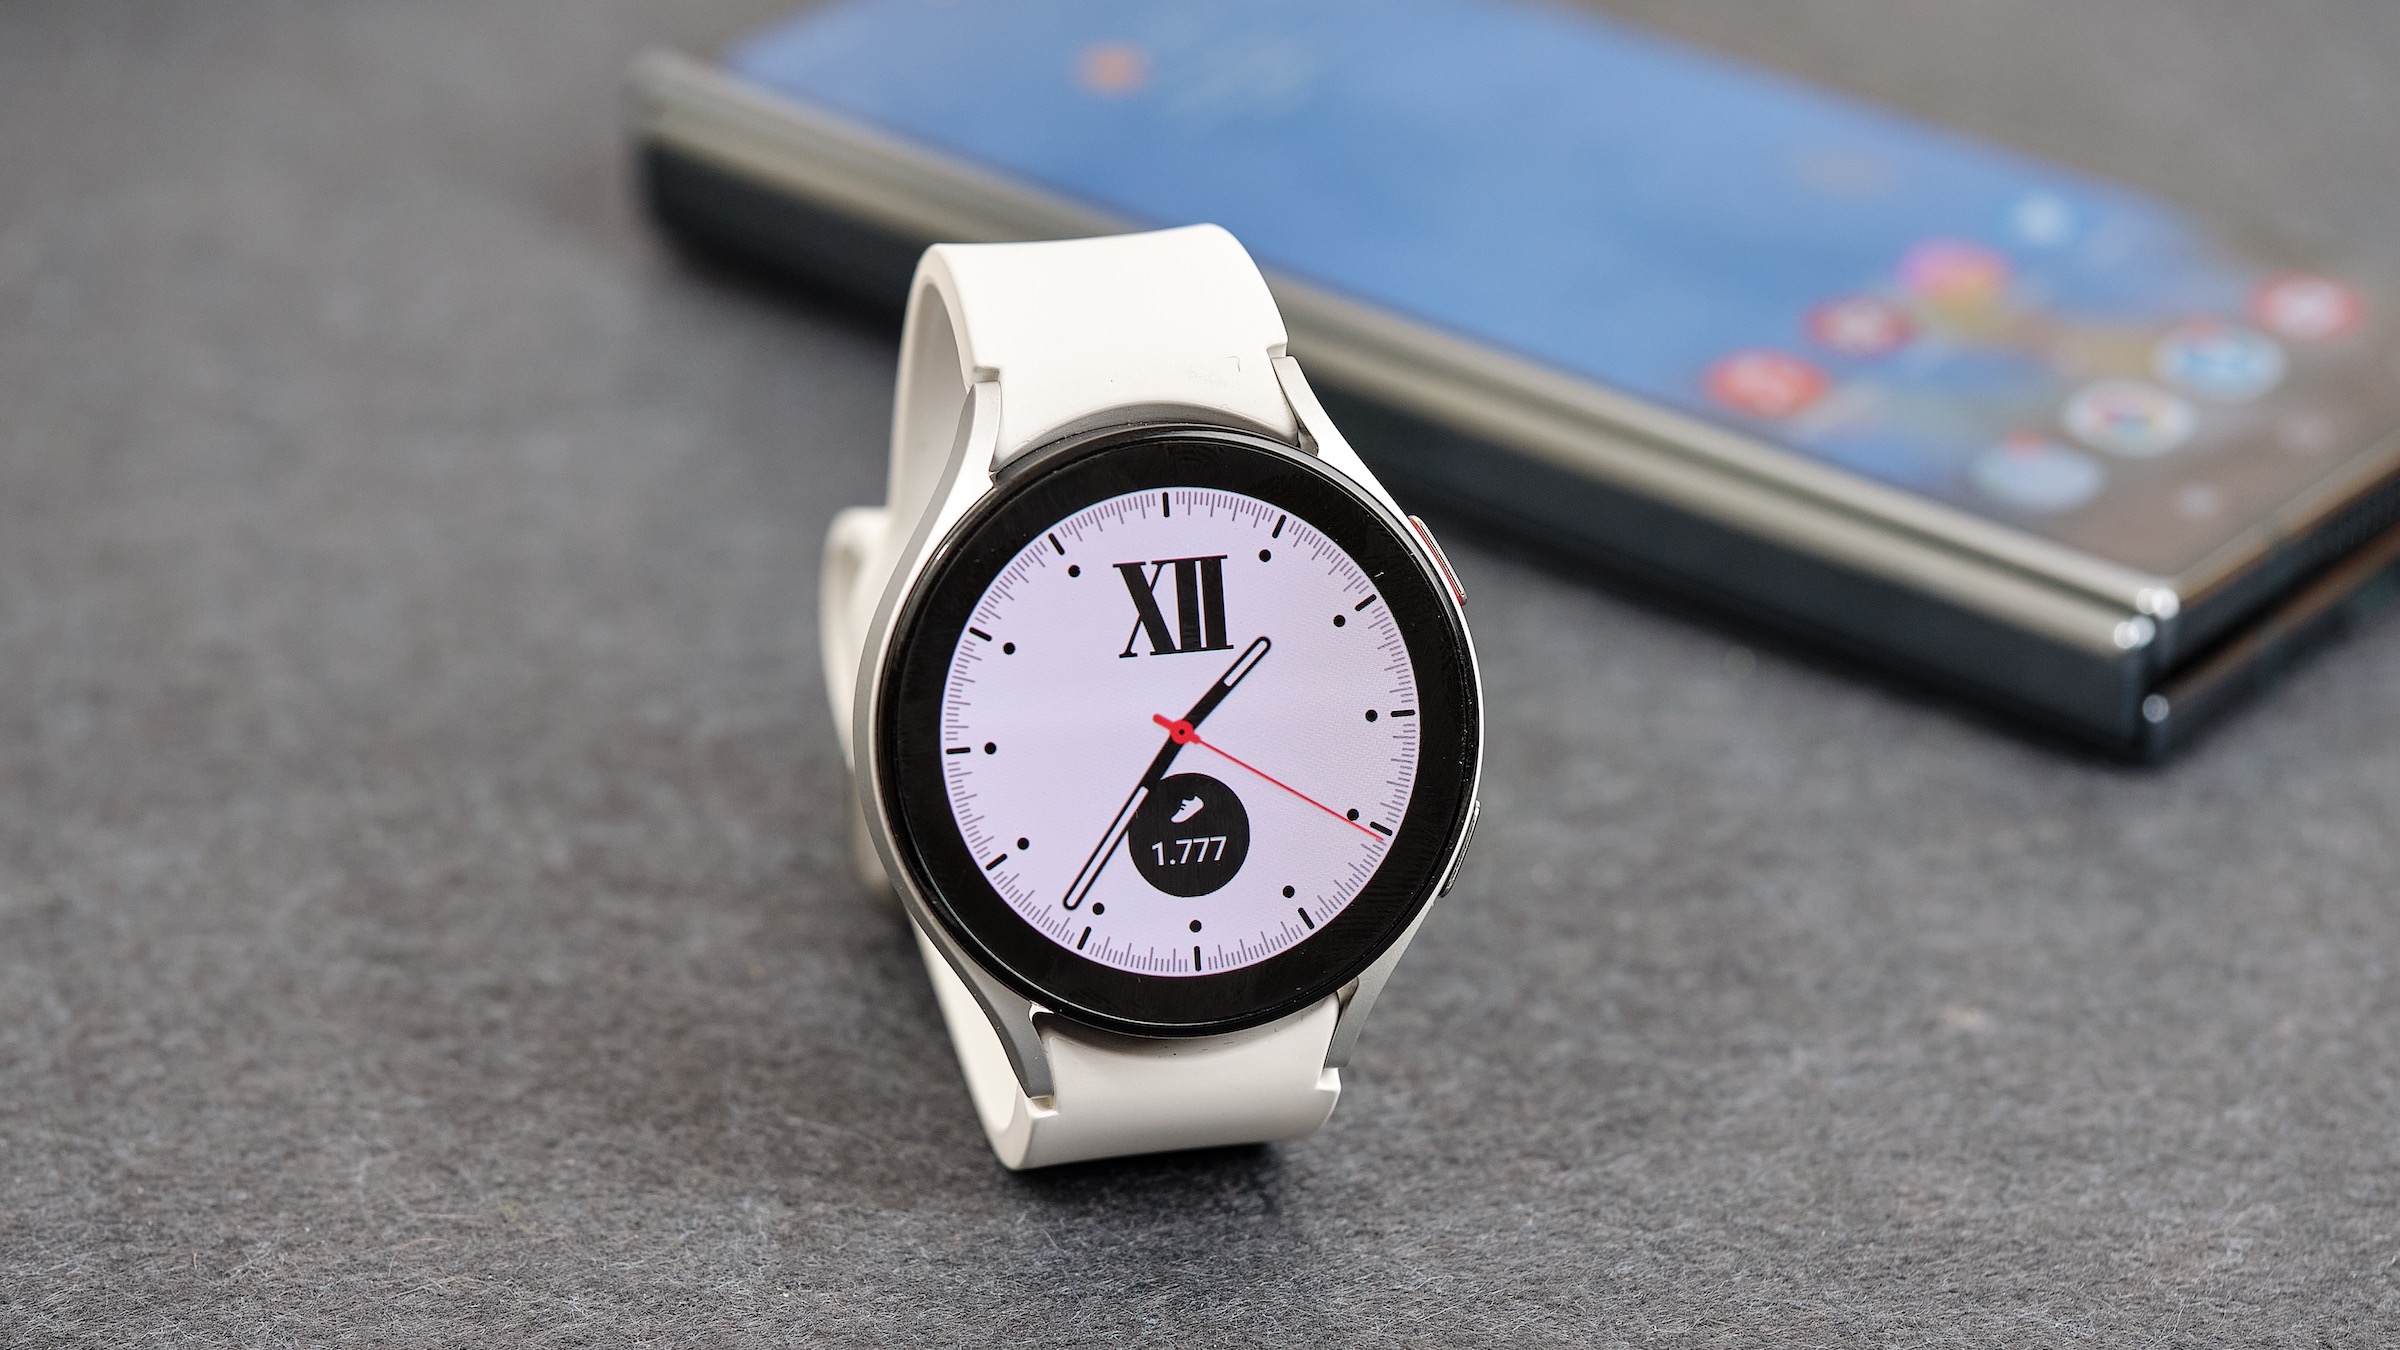 Marinero Acercarse calcio Samsung Galaxy Watch 5, análisis y opinión | Computer Hoy